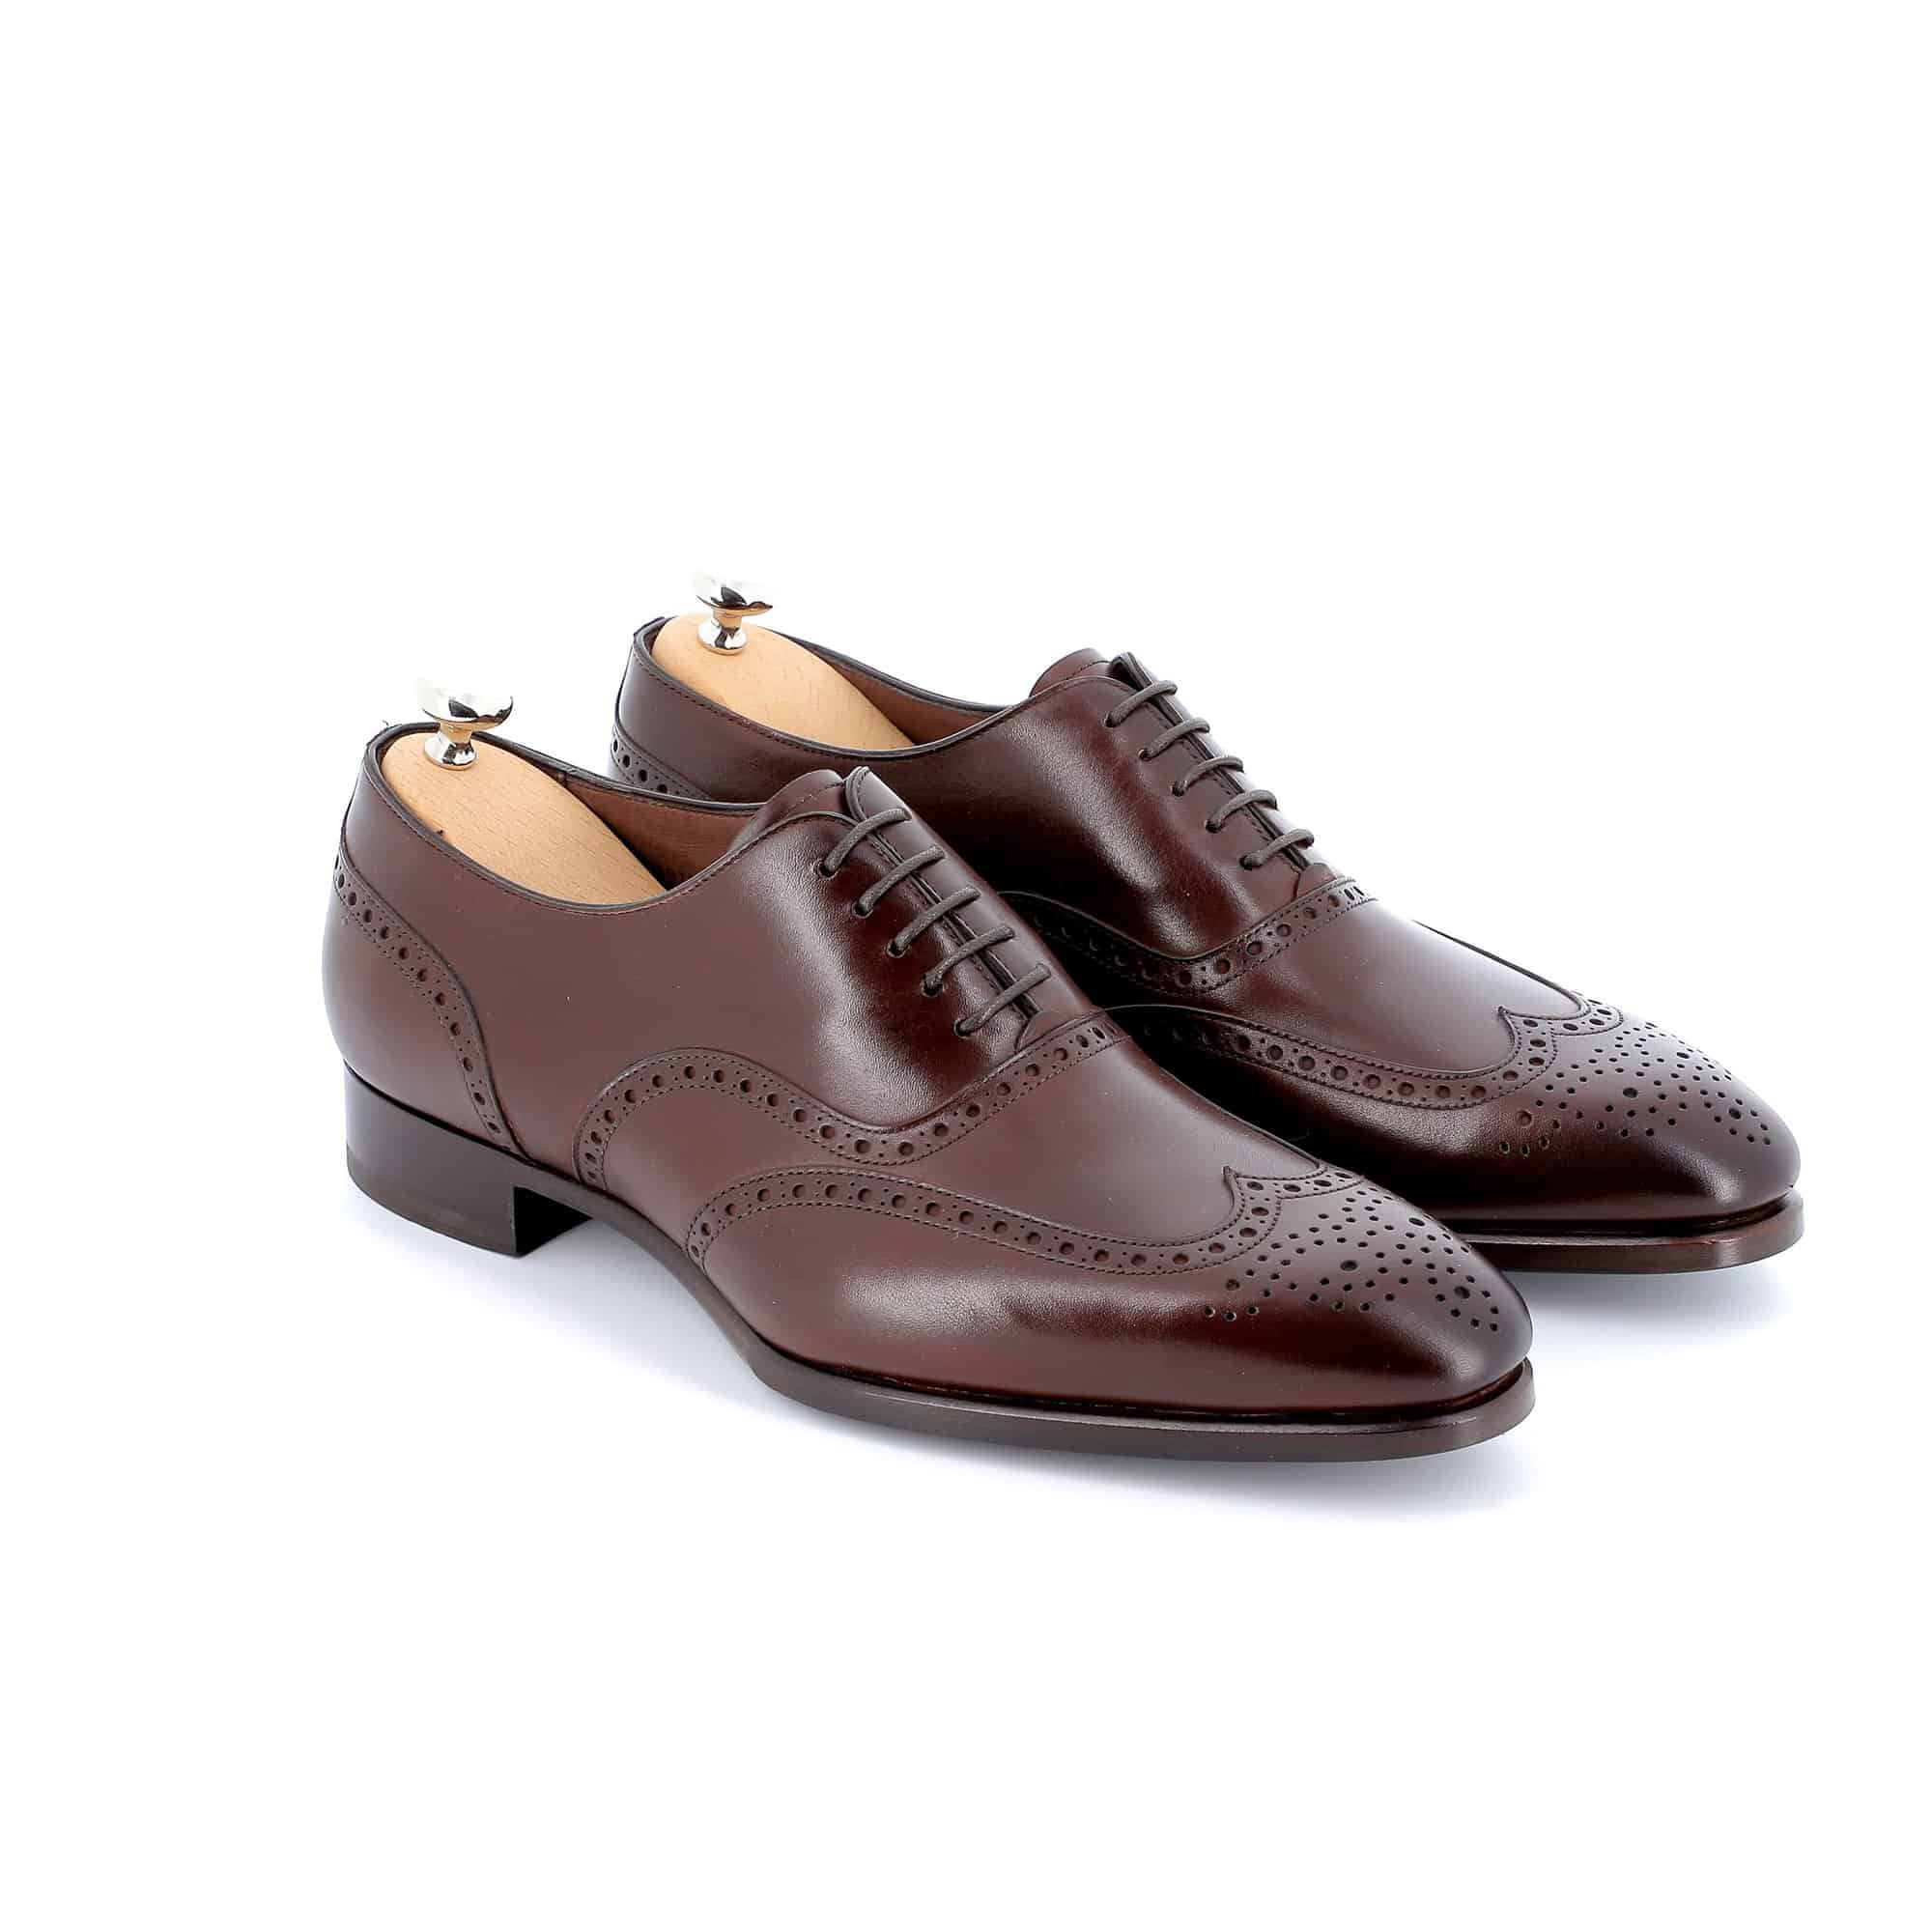 Chaussures Richelieu Charles cuir marron semelles cuir